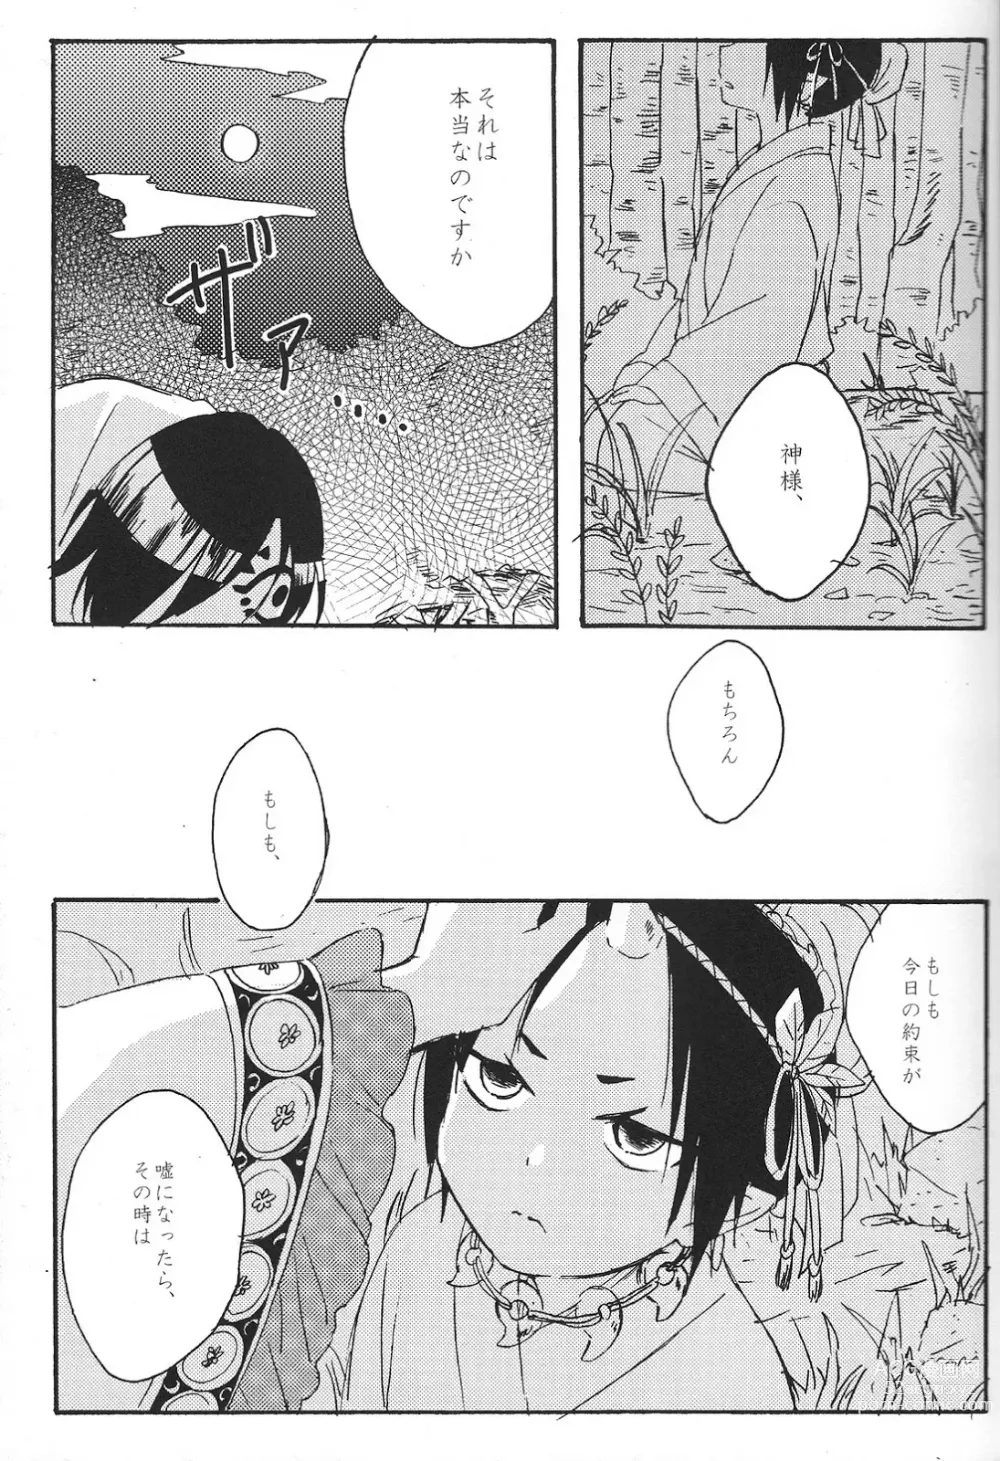 Page 4 of doujinshi Hikkakikizu